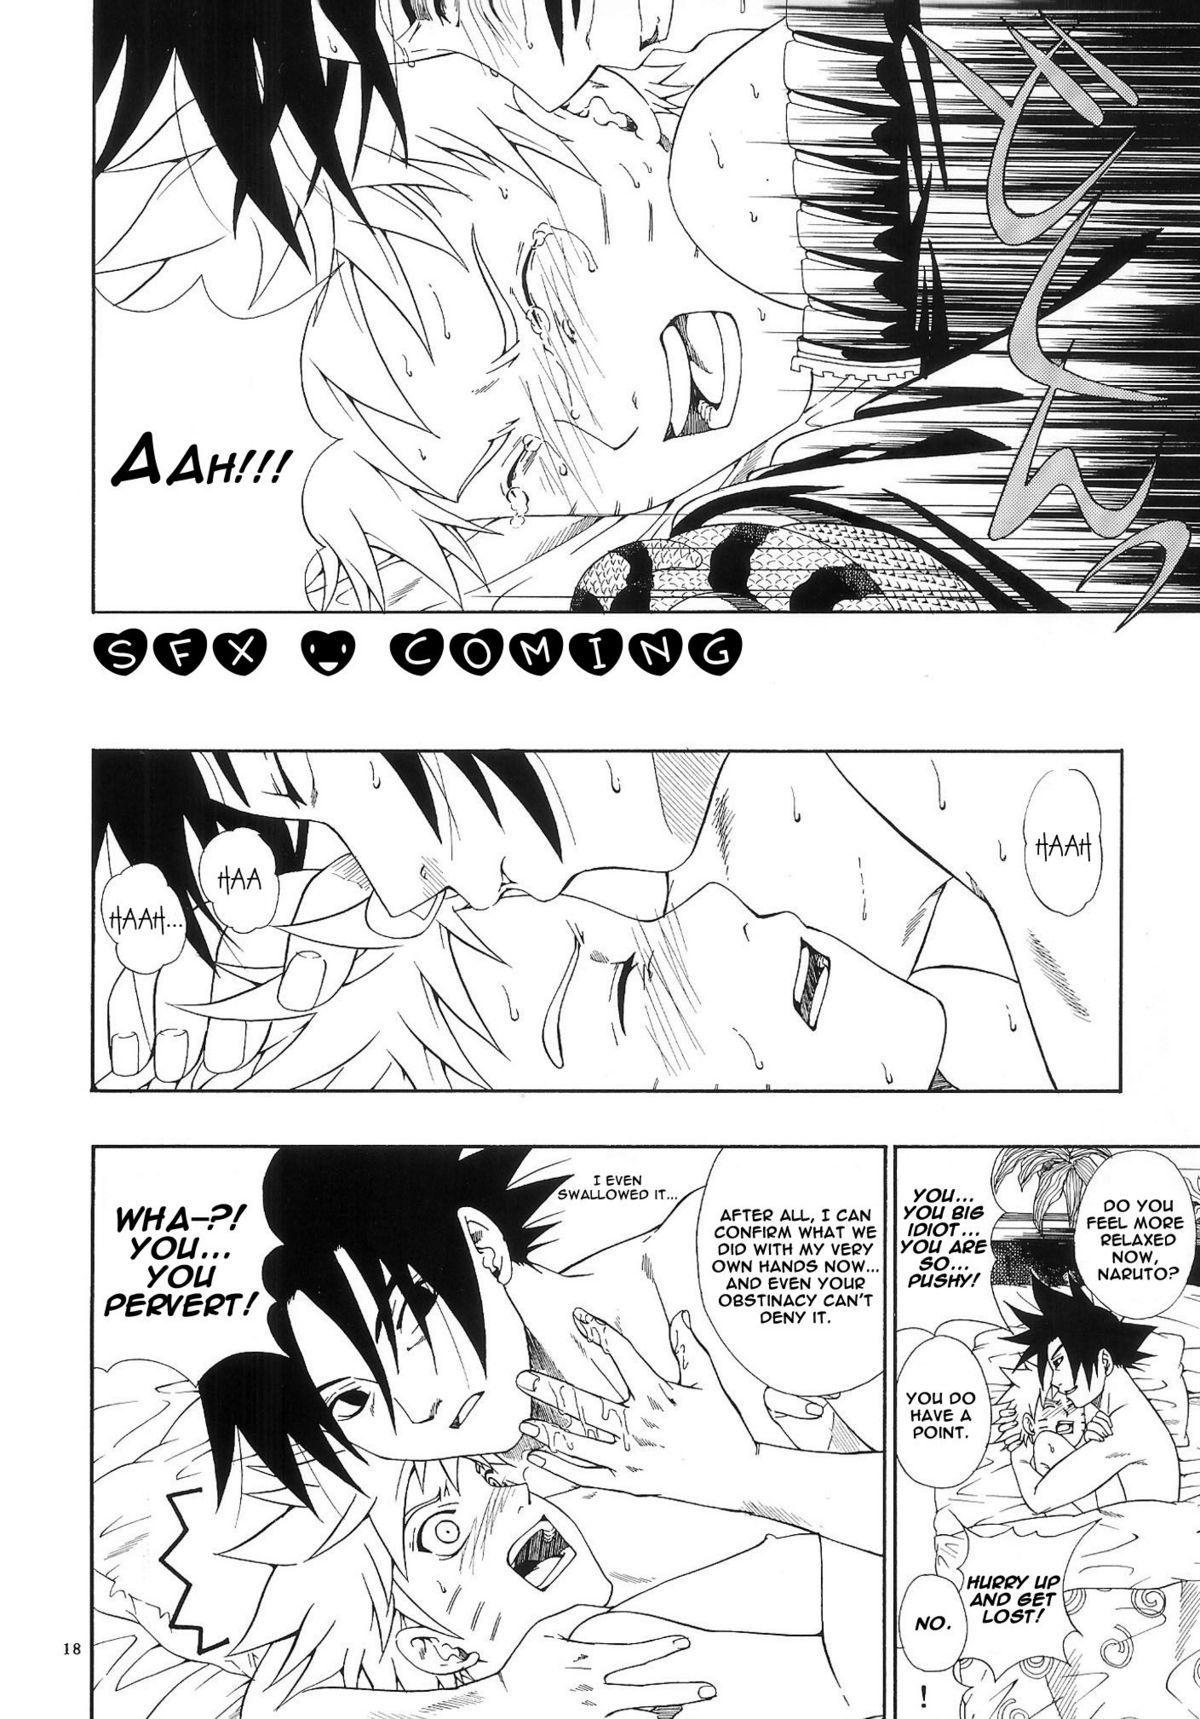 ERO ERO²: Volume 1.5  (NARUTO) [Sasuke X Naruto] YAOI -ENG- 16